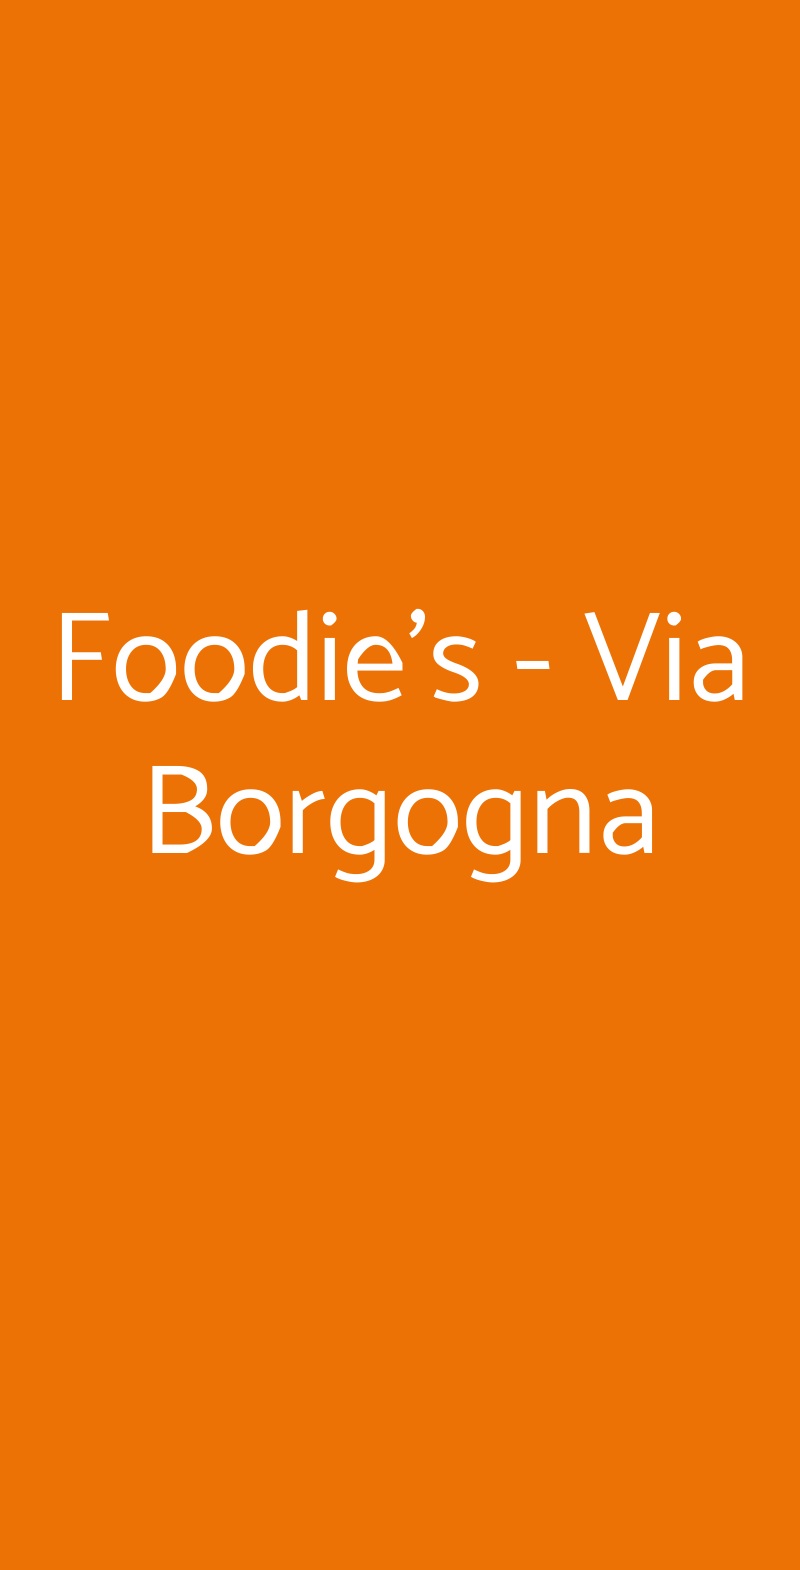 Foodie's - Via Borgogna Milano menù 1 pagina